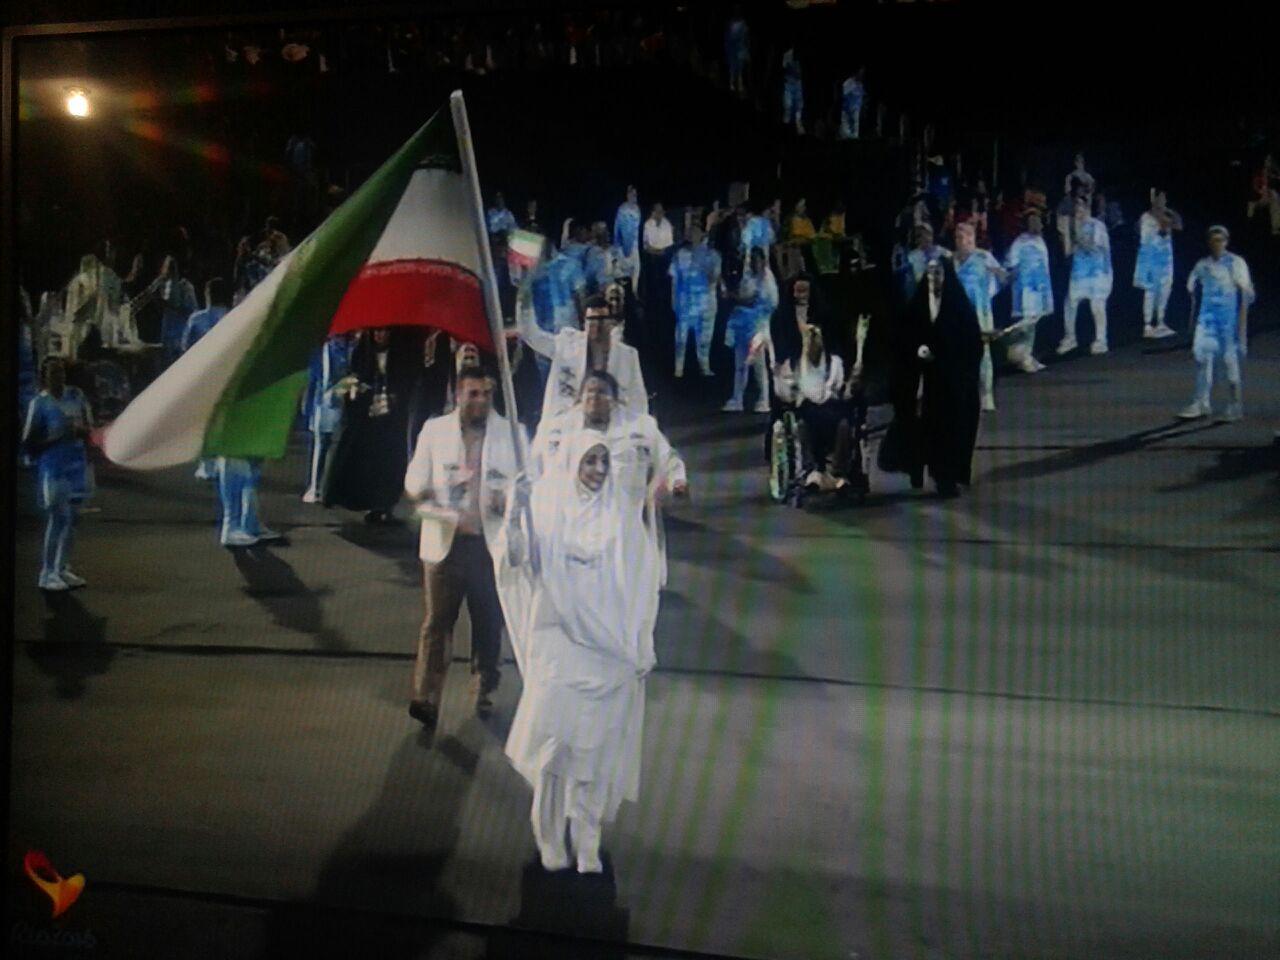 رژه کاروان ايران در مراسم افتتاحيه/ بانوي پرچمدار ايران با لباس احرام + عکس